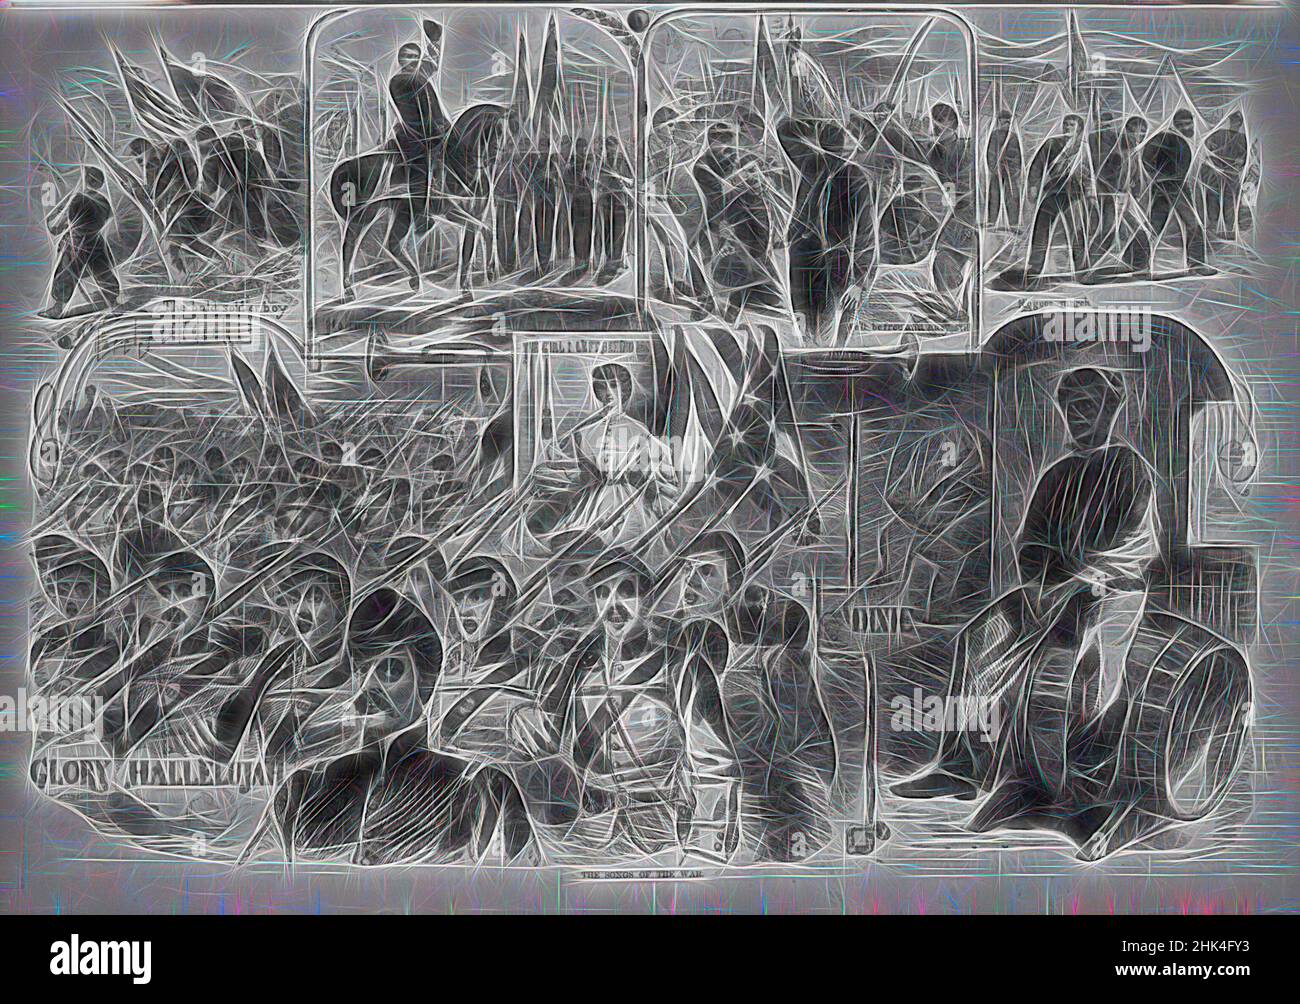 Inspiriert von den Liedern des Krieges, Winslow Homer, Amerikaner, 1836-1910, Holzstich, 1861, Bild: 13 7/8 x 20 1/8 Zoll, 35,2 x 51,1 cm, 1861, Bürgerkrieg, Sesquicentennial, Neueinbildung von Artotop. Klassische Kunst neu erfunden mit einem modernen Twist. Design von warmen fröhlichen Leuchten der Helligkeit und Lichtstrahl Strahlkraft. Fotografie inspiriert von Surrealismus und Futurismus, umarmt dynamische Energie der modernen Technologie, Bewegung, Geschwindigkeit und Kultur zu revolutionieren Stockfoto